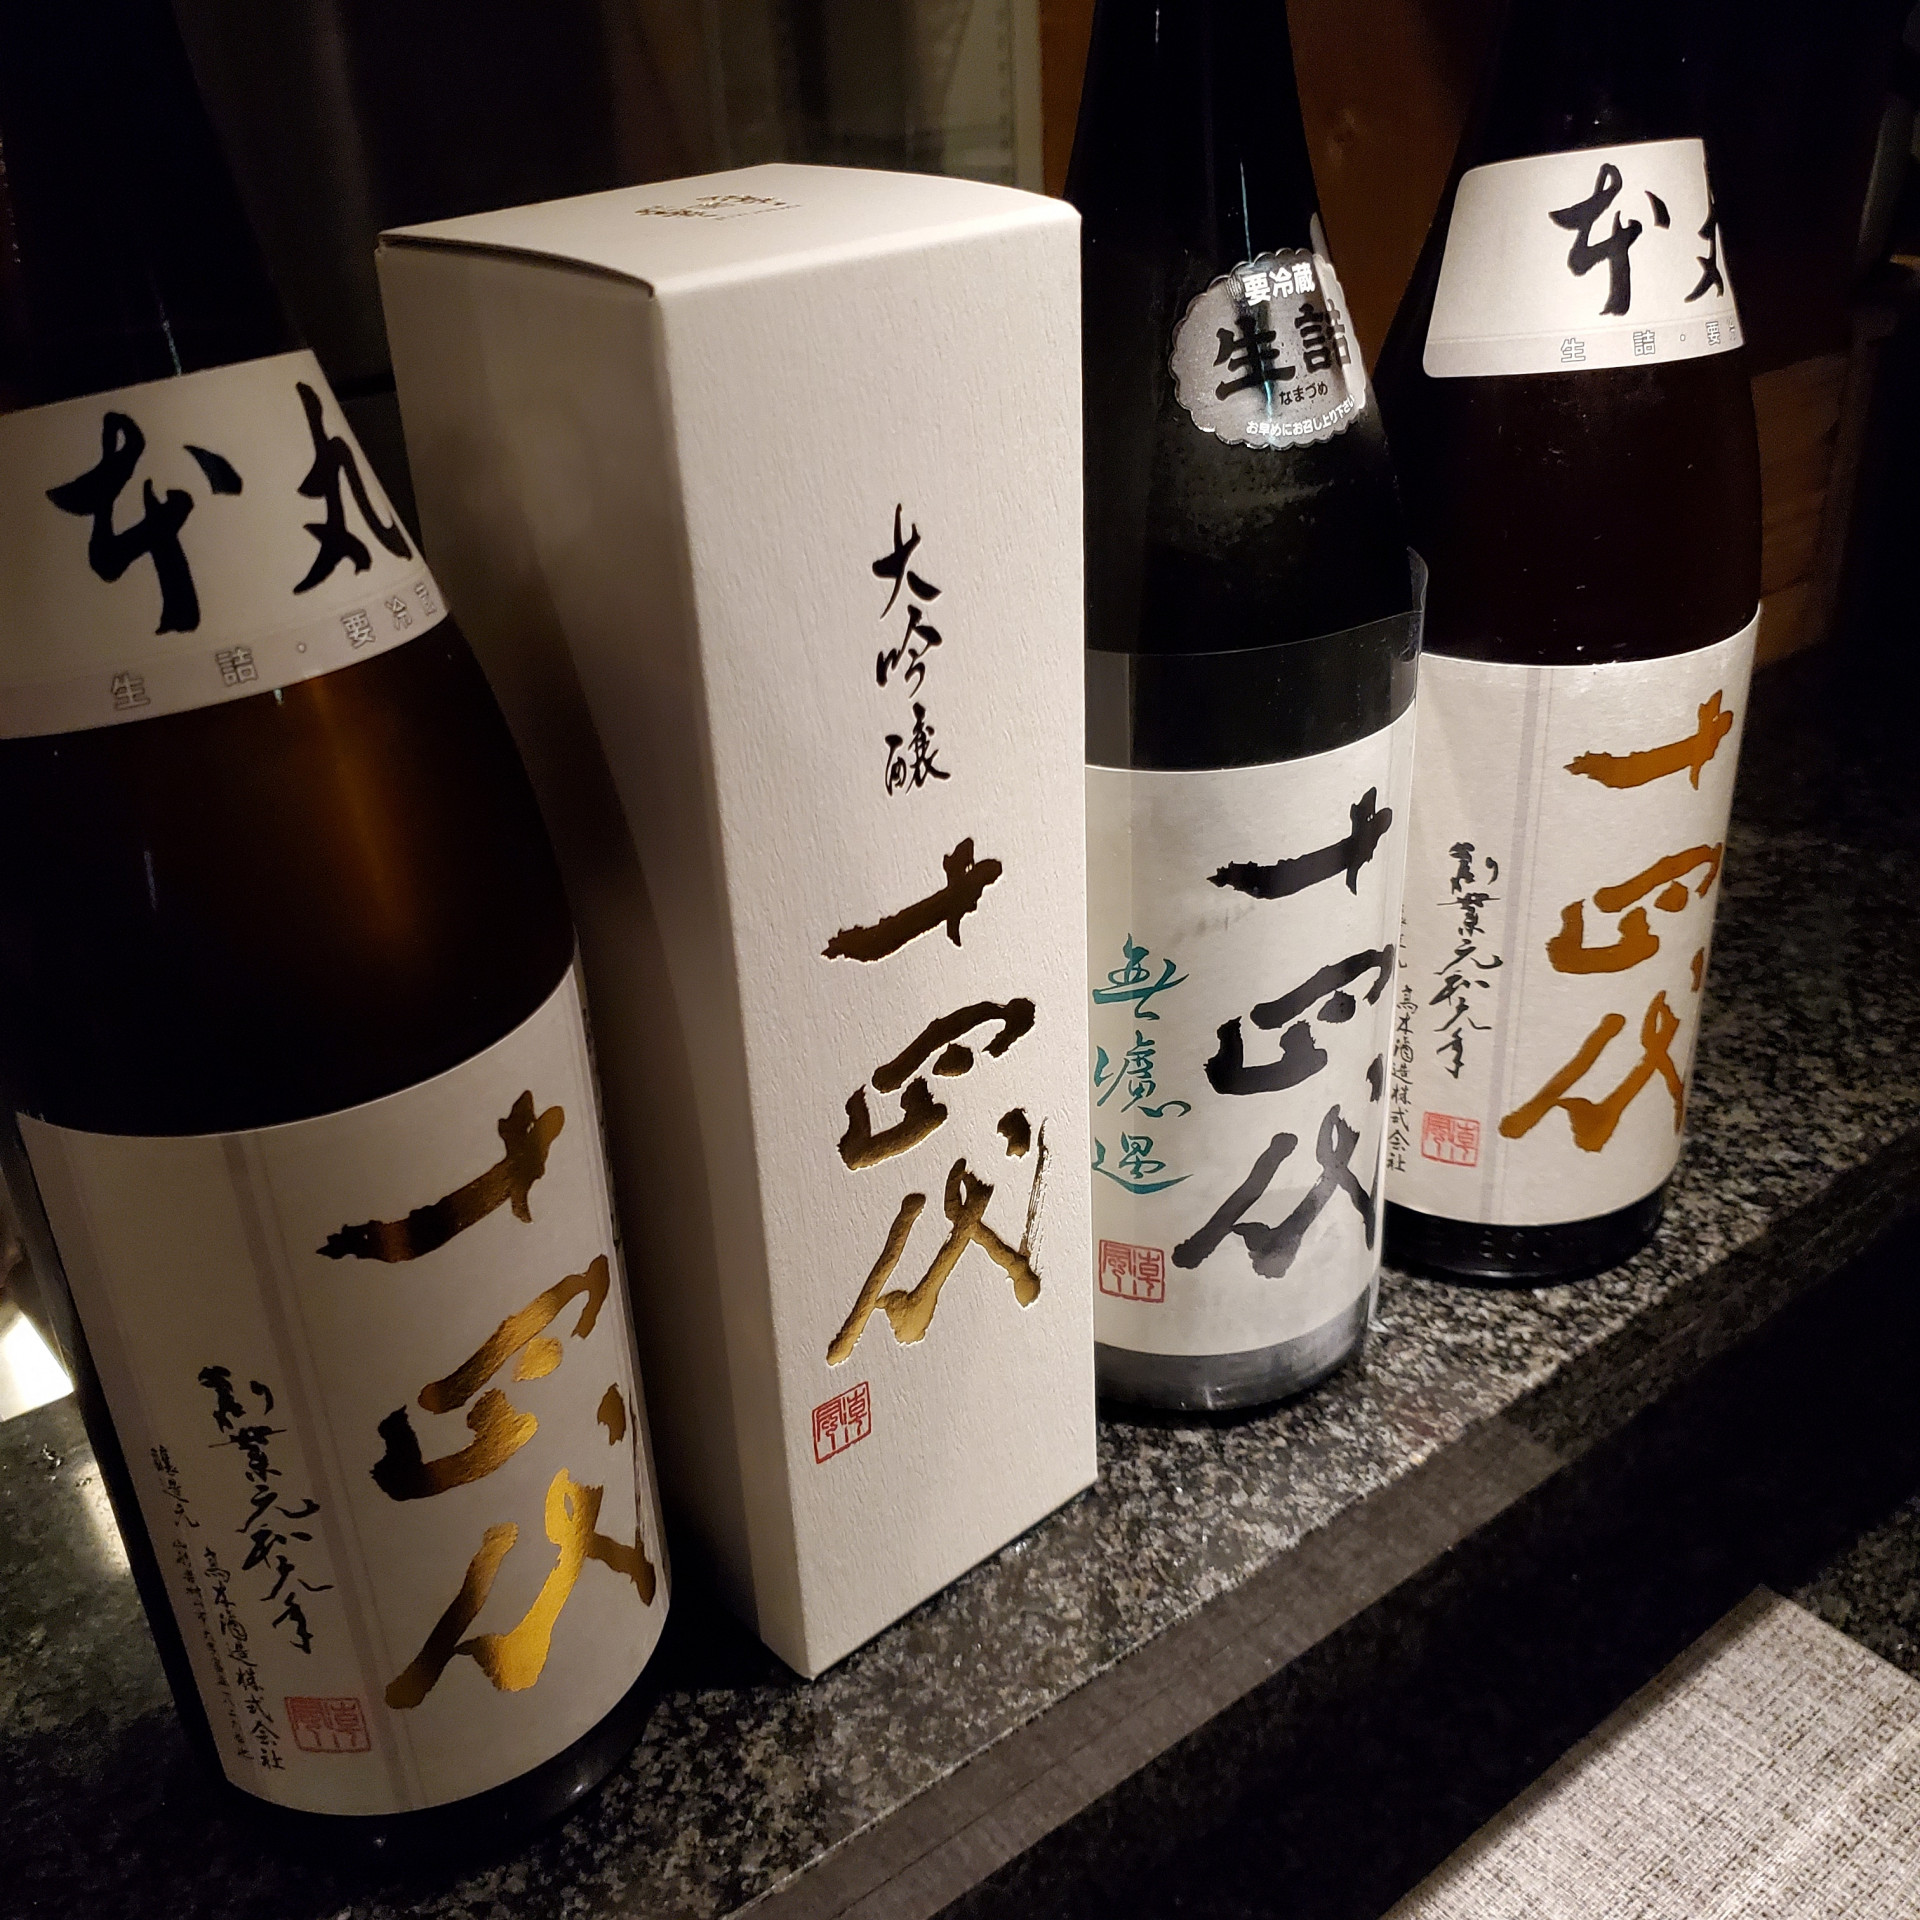 今日は日本酒の日。プレミアムな日本酒十四代